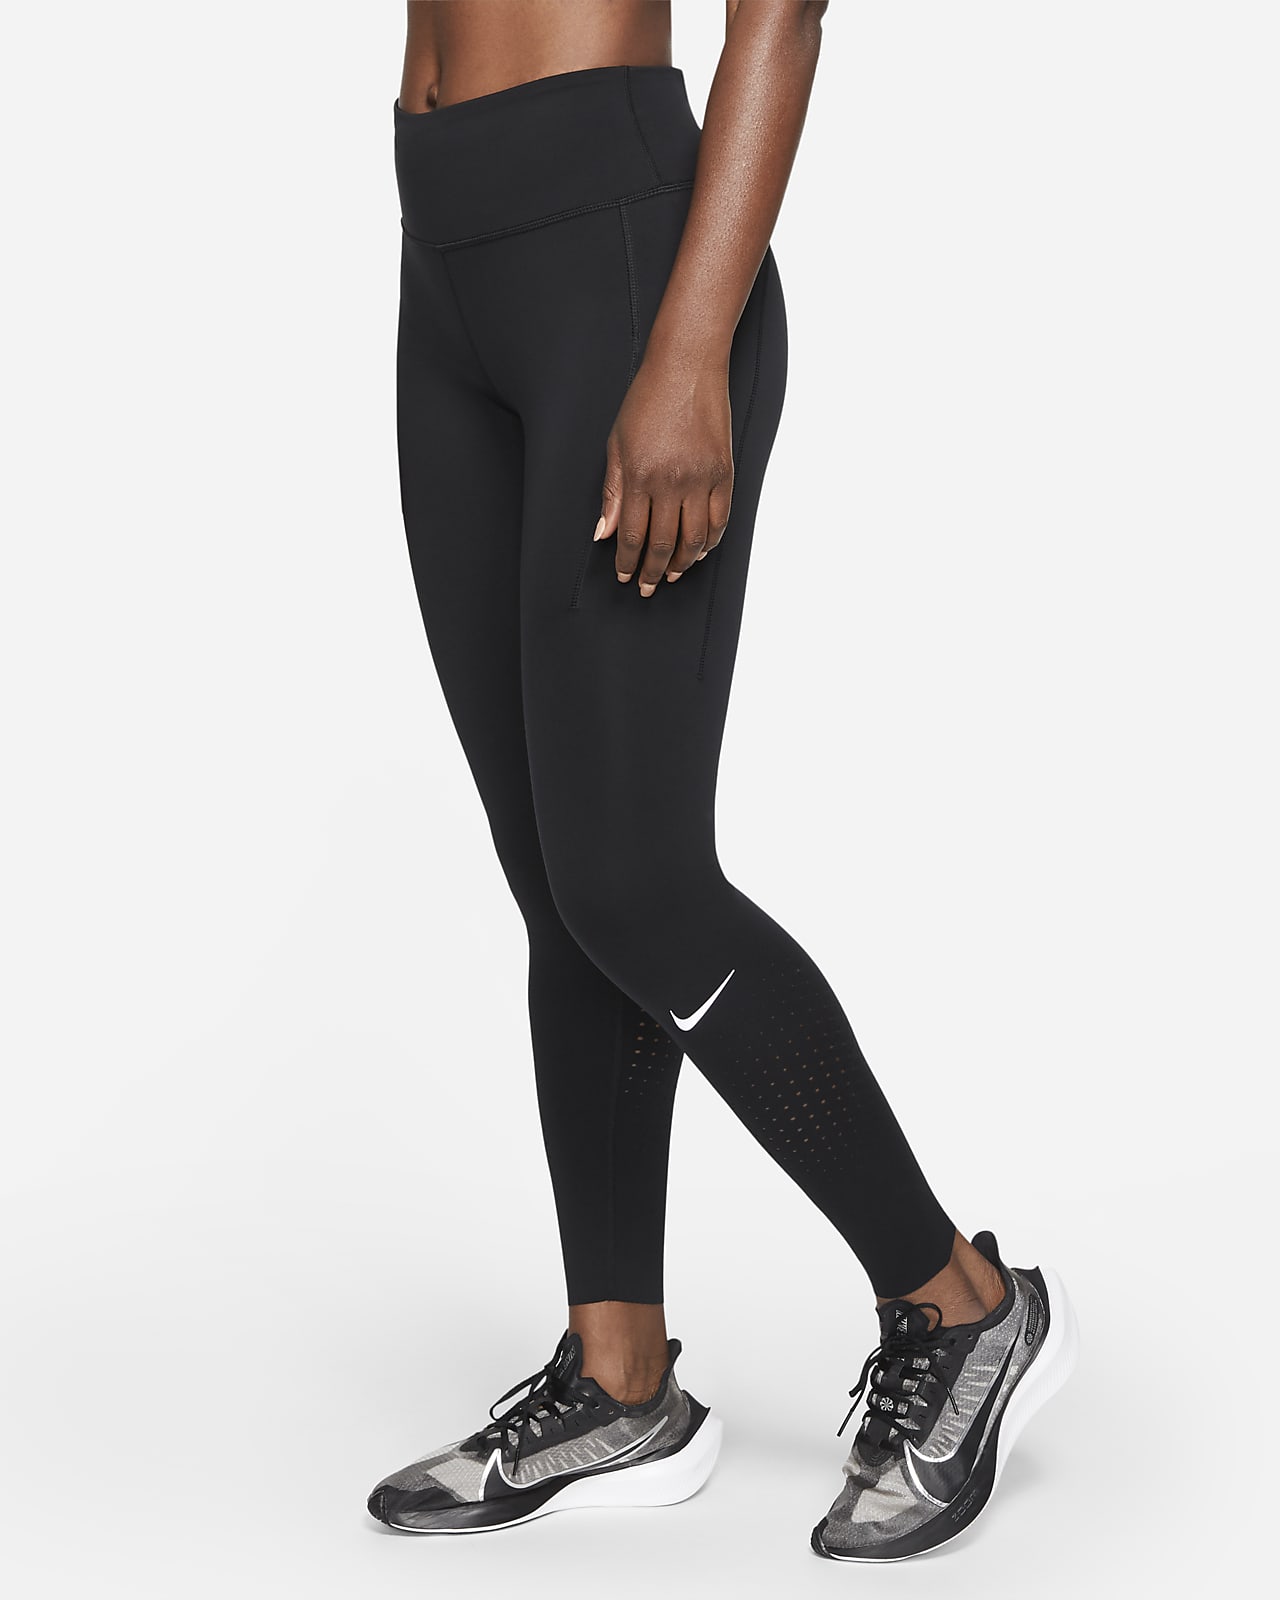 Dámské legíny Nike Epic Luxe se středně vysokým pasem a kapsami